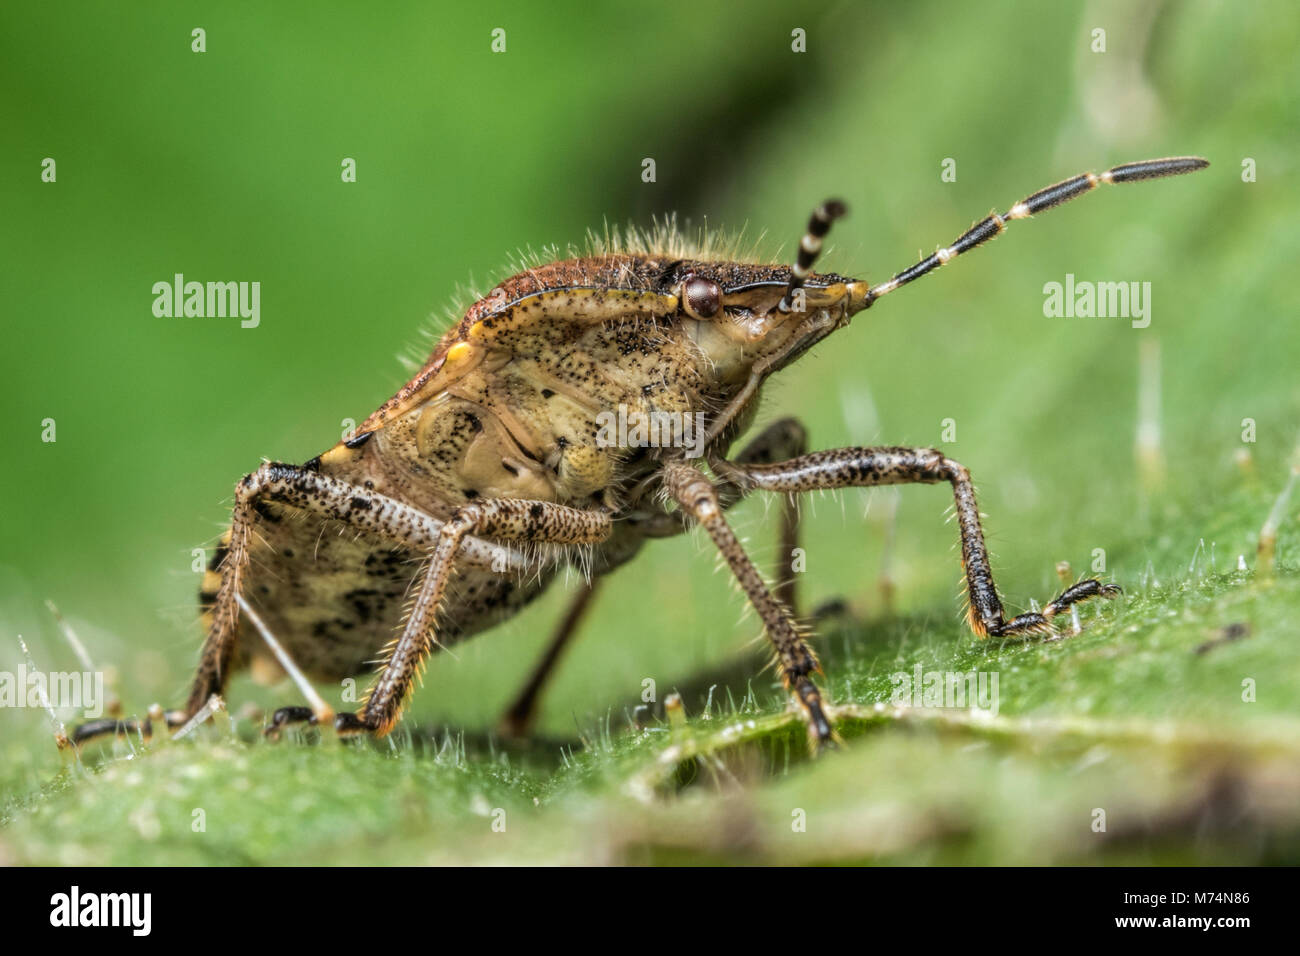 Behaart (Dolycoris baccarum Shieldbug) sitzen auf Pflanze Blätter mit der Unterseite des Körpers. Tipperary, Irland Stockfoto